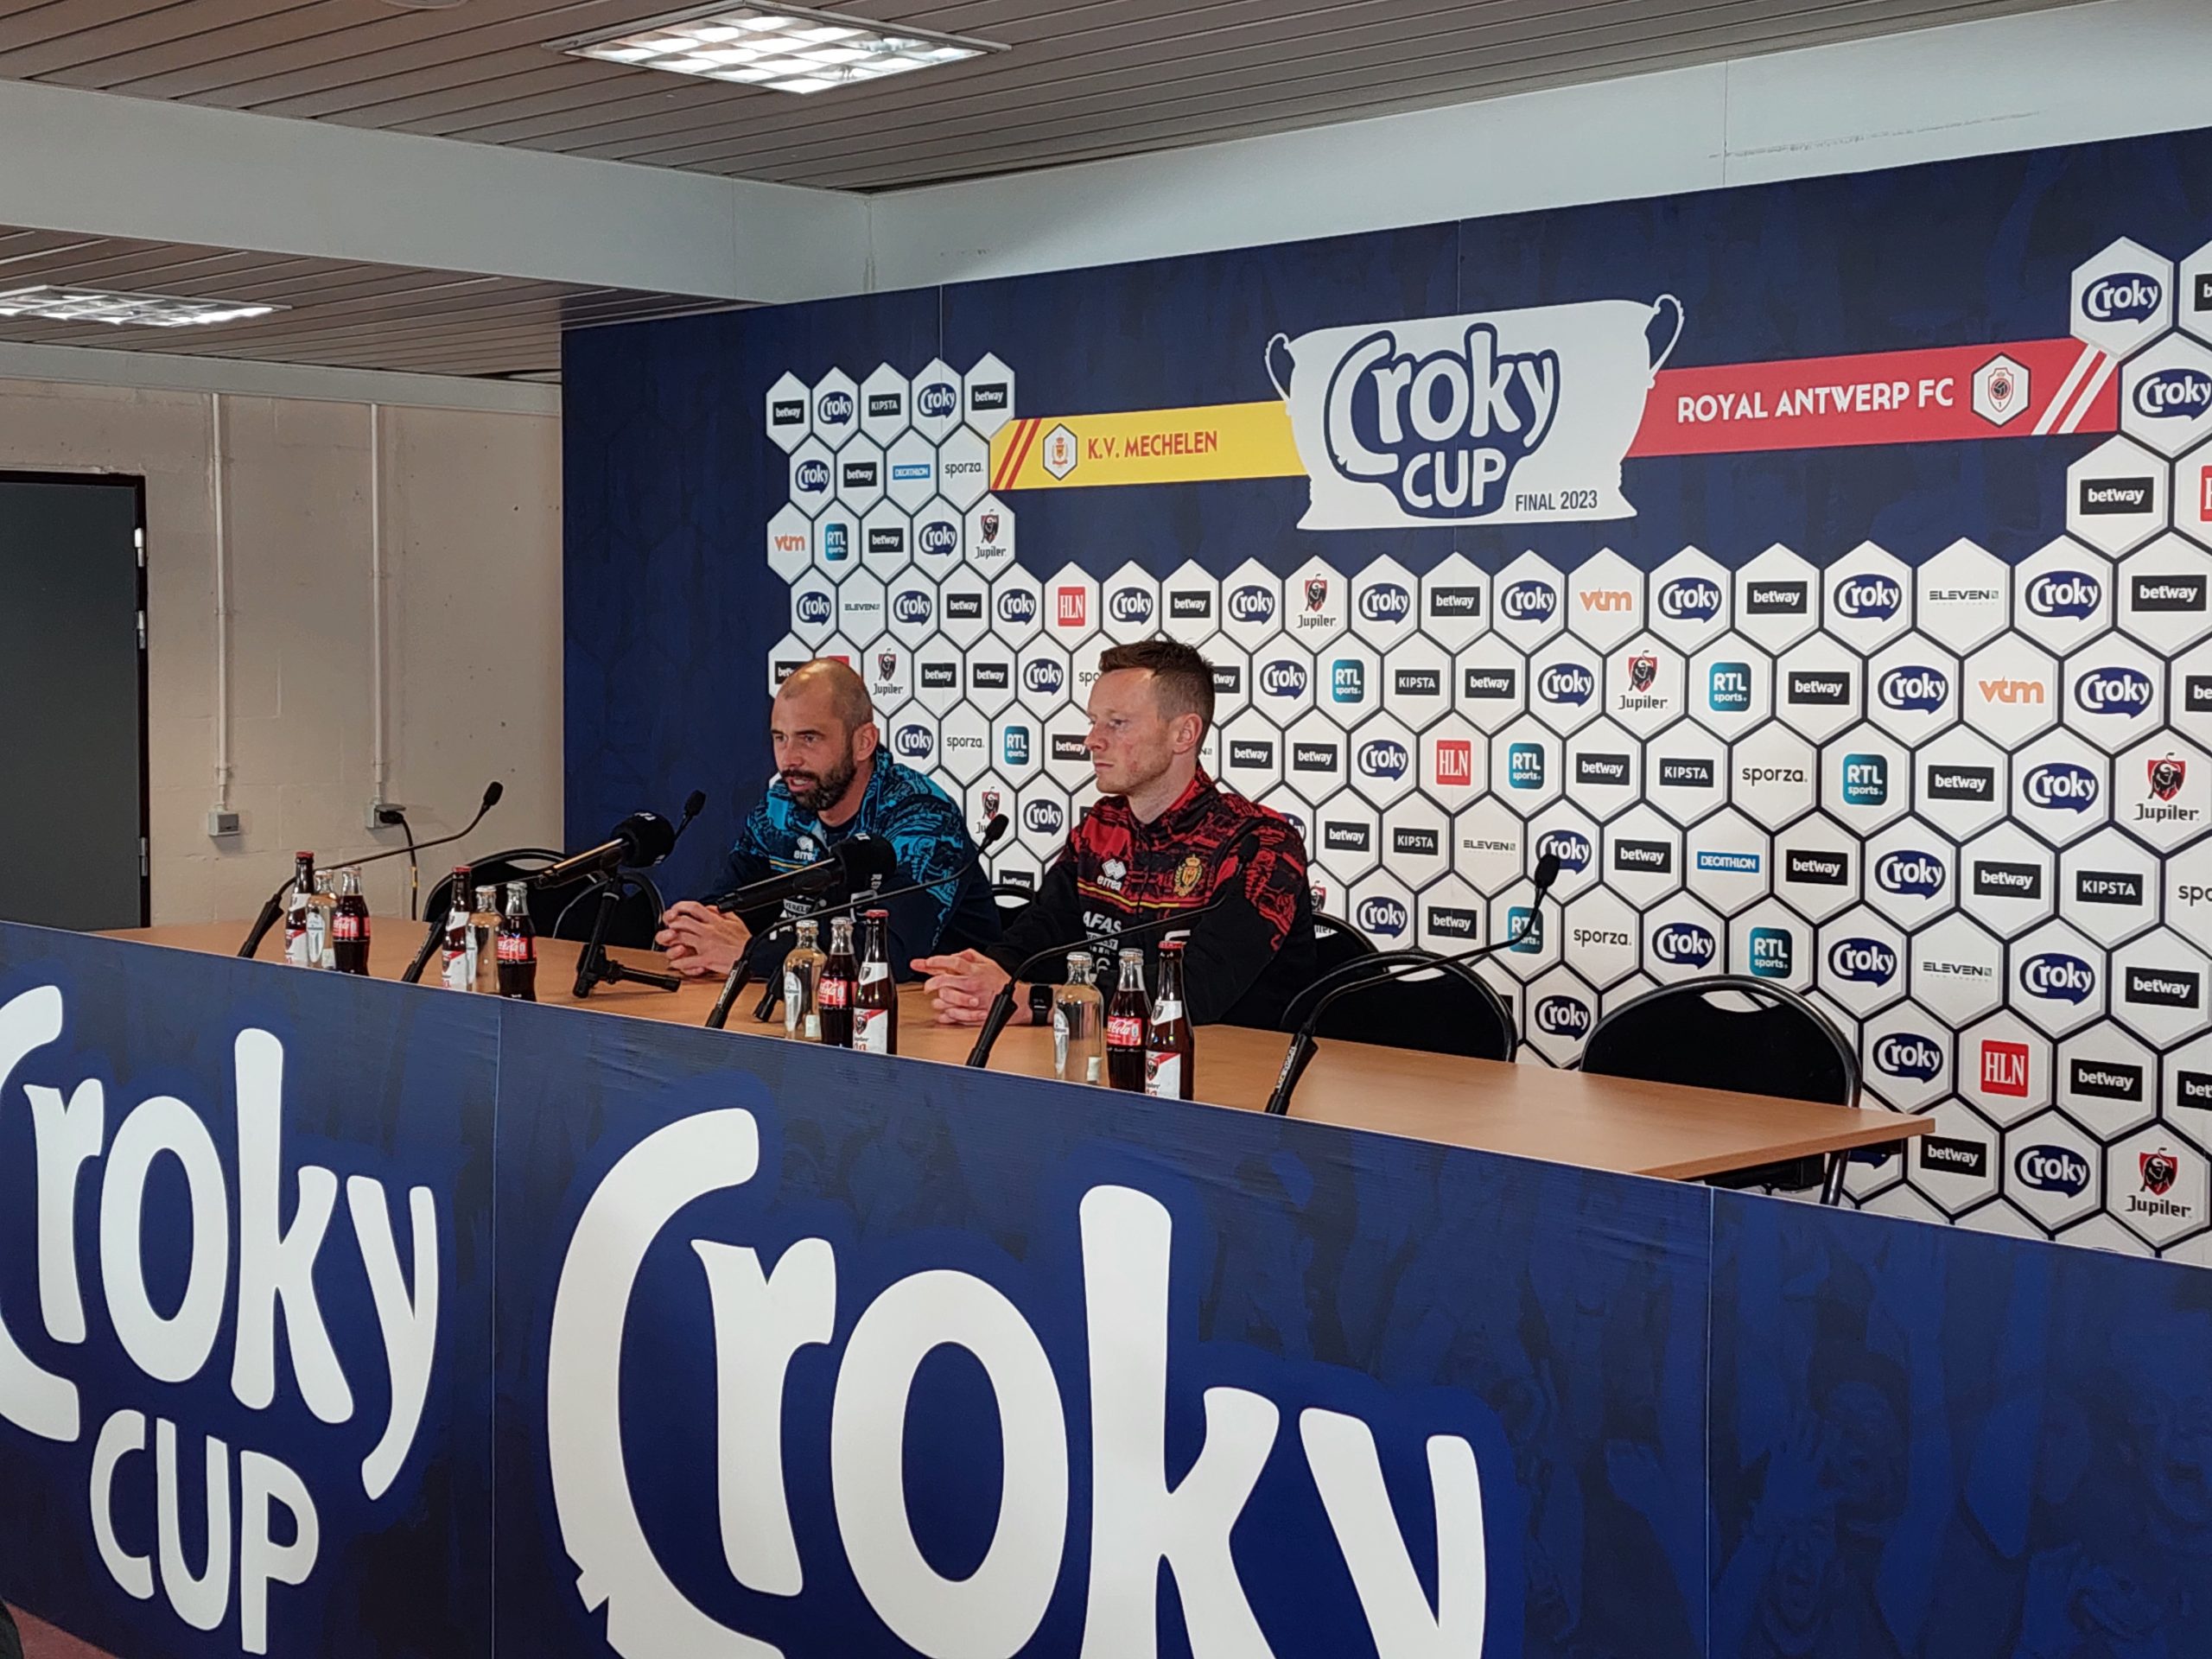 kop Kreta Demonteer KV Mechelen en coach Steven Defour zijn klaar voor Bekerfinale: “Winst zou  het mooiste moment uit mijn carrière zijn” – Radio Reflex